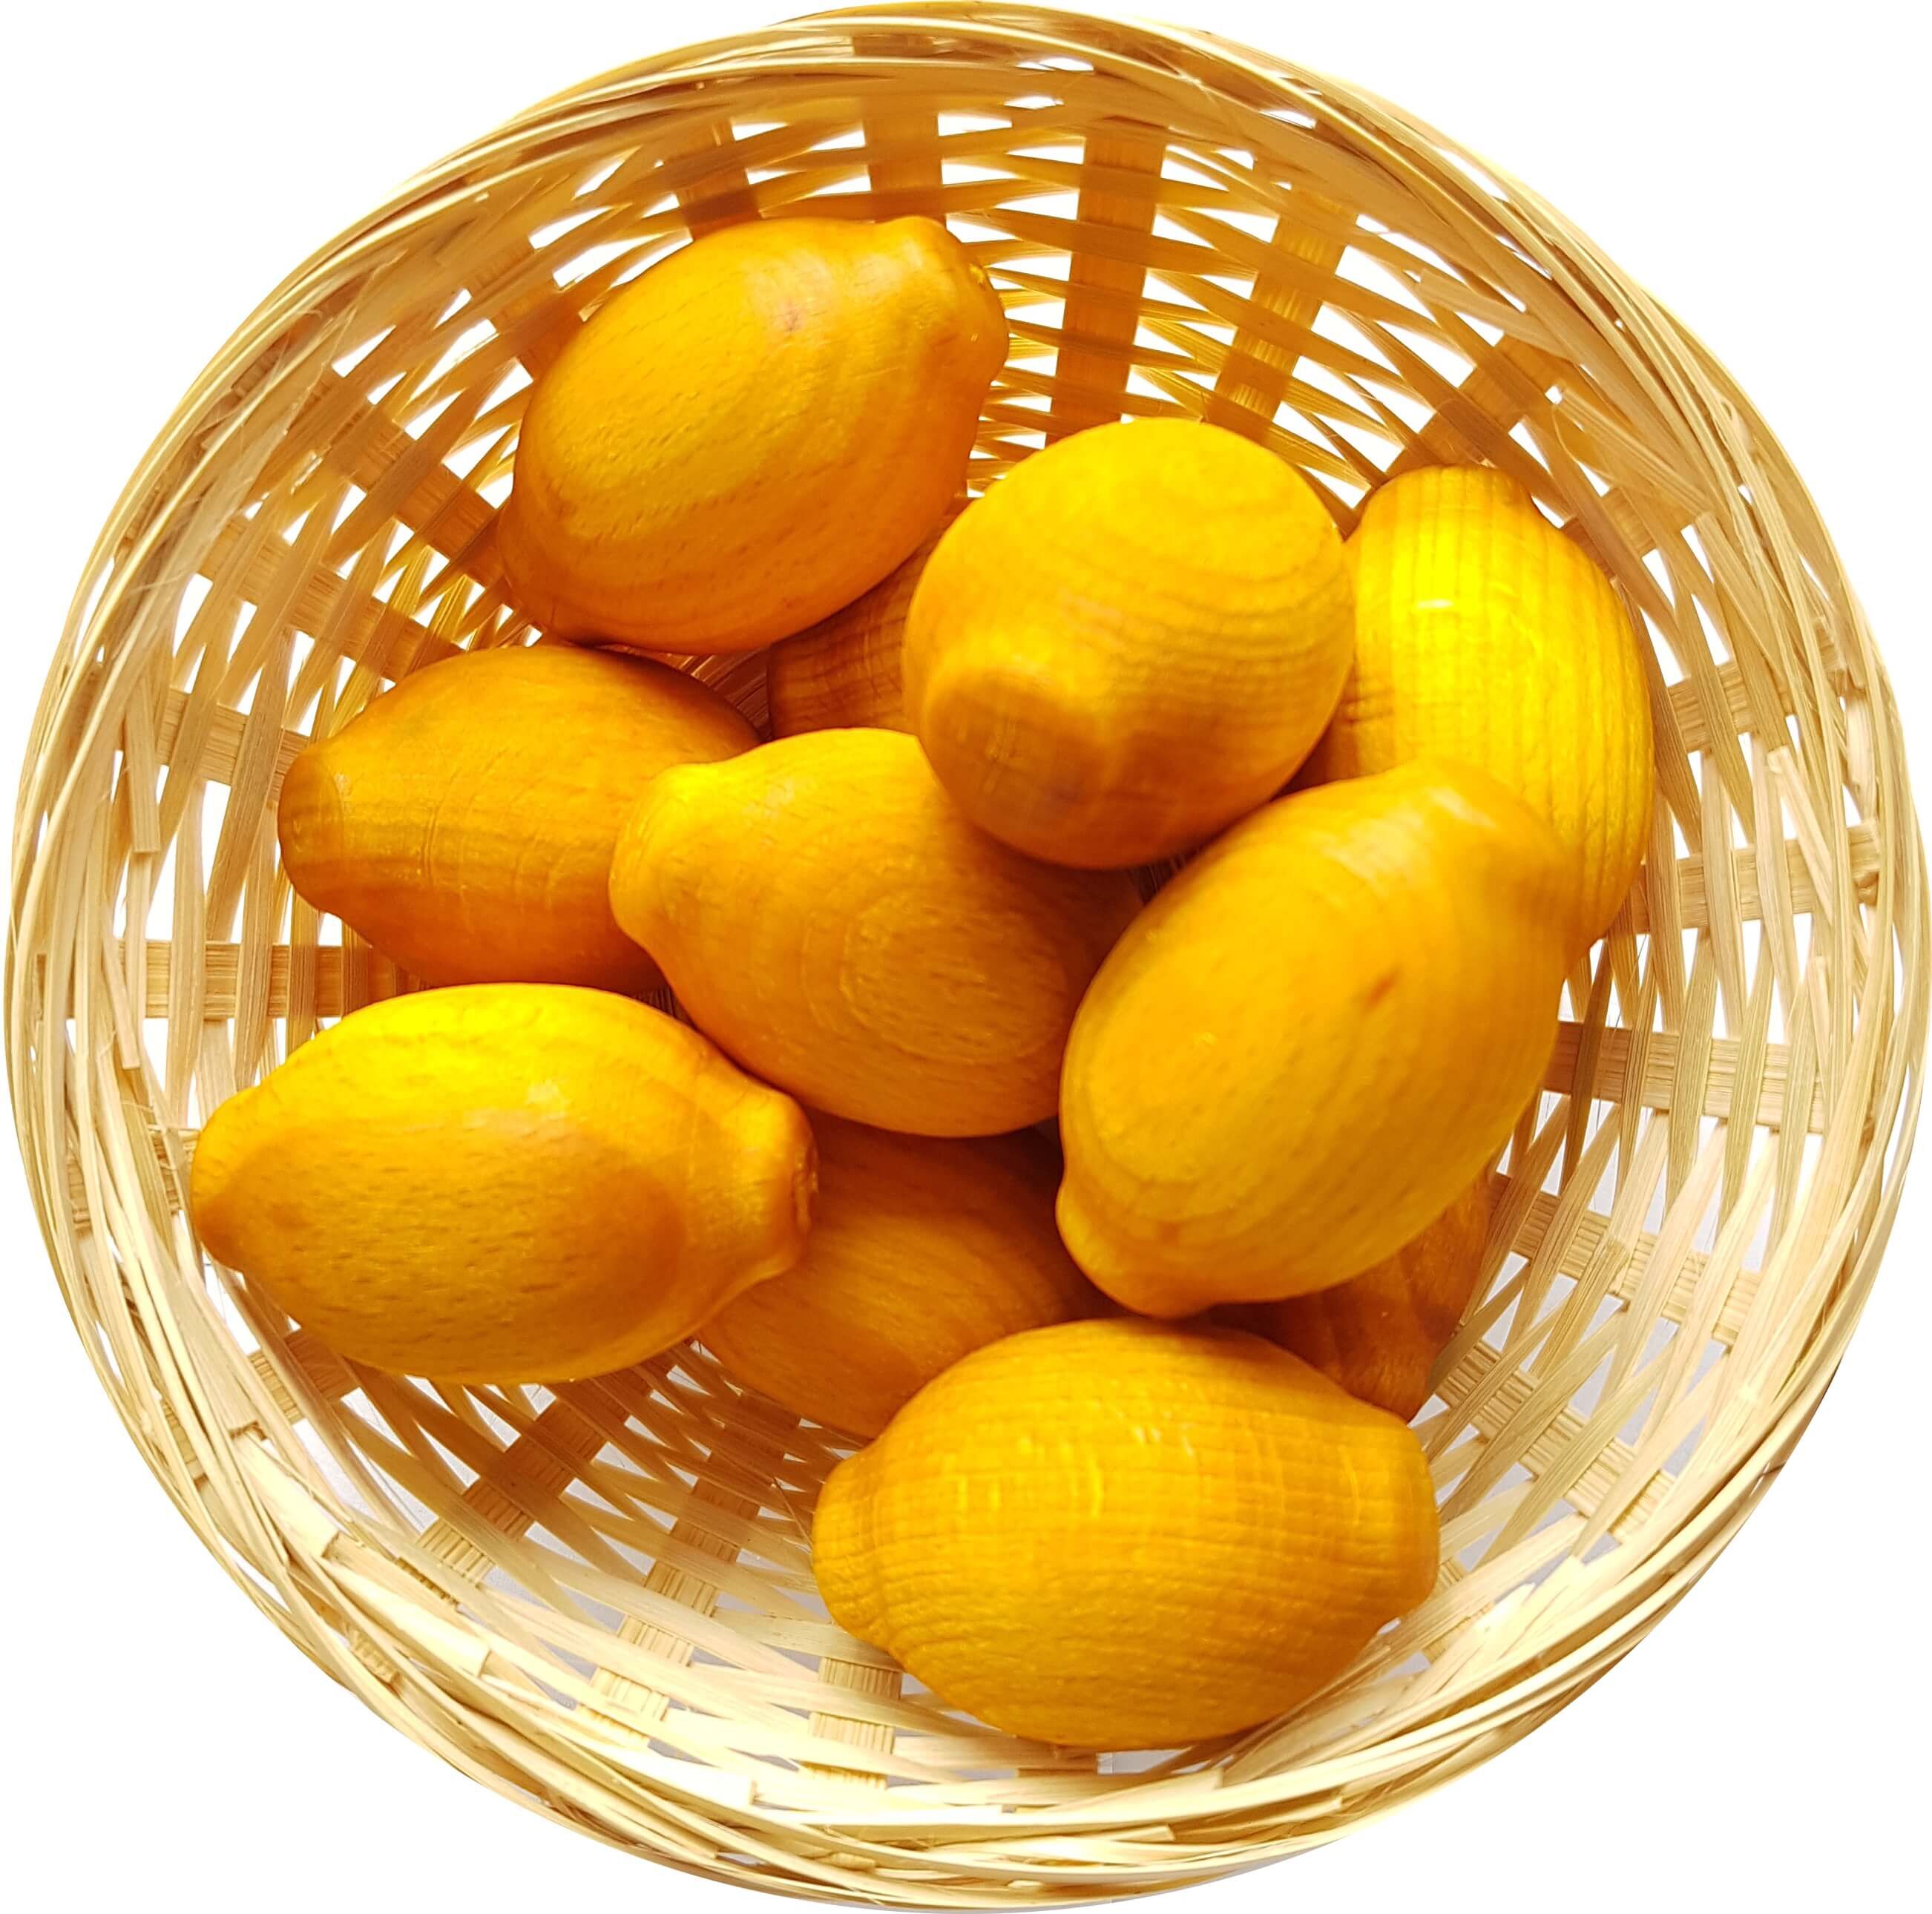 5x Zitrone Duftholz zur Lufterfrischung und Raumbeduftung - Dufthölzer - Duftfrüchte - Duftkugel